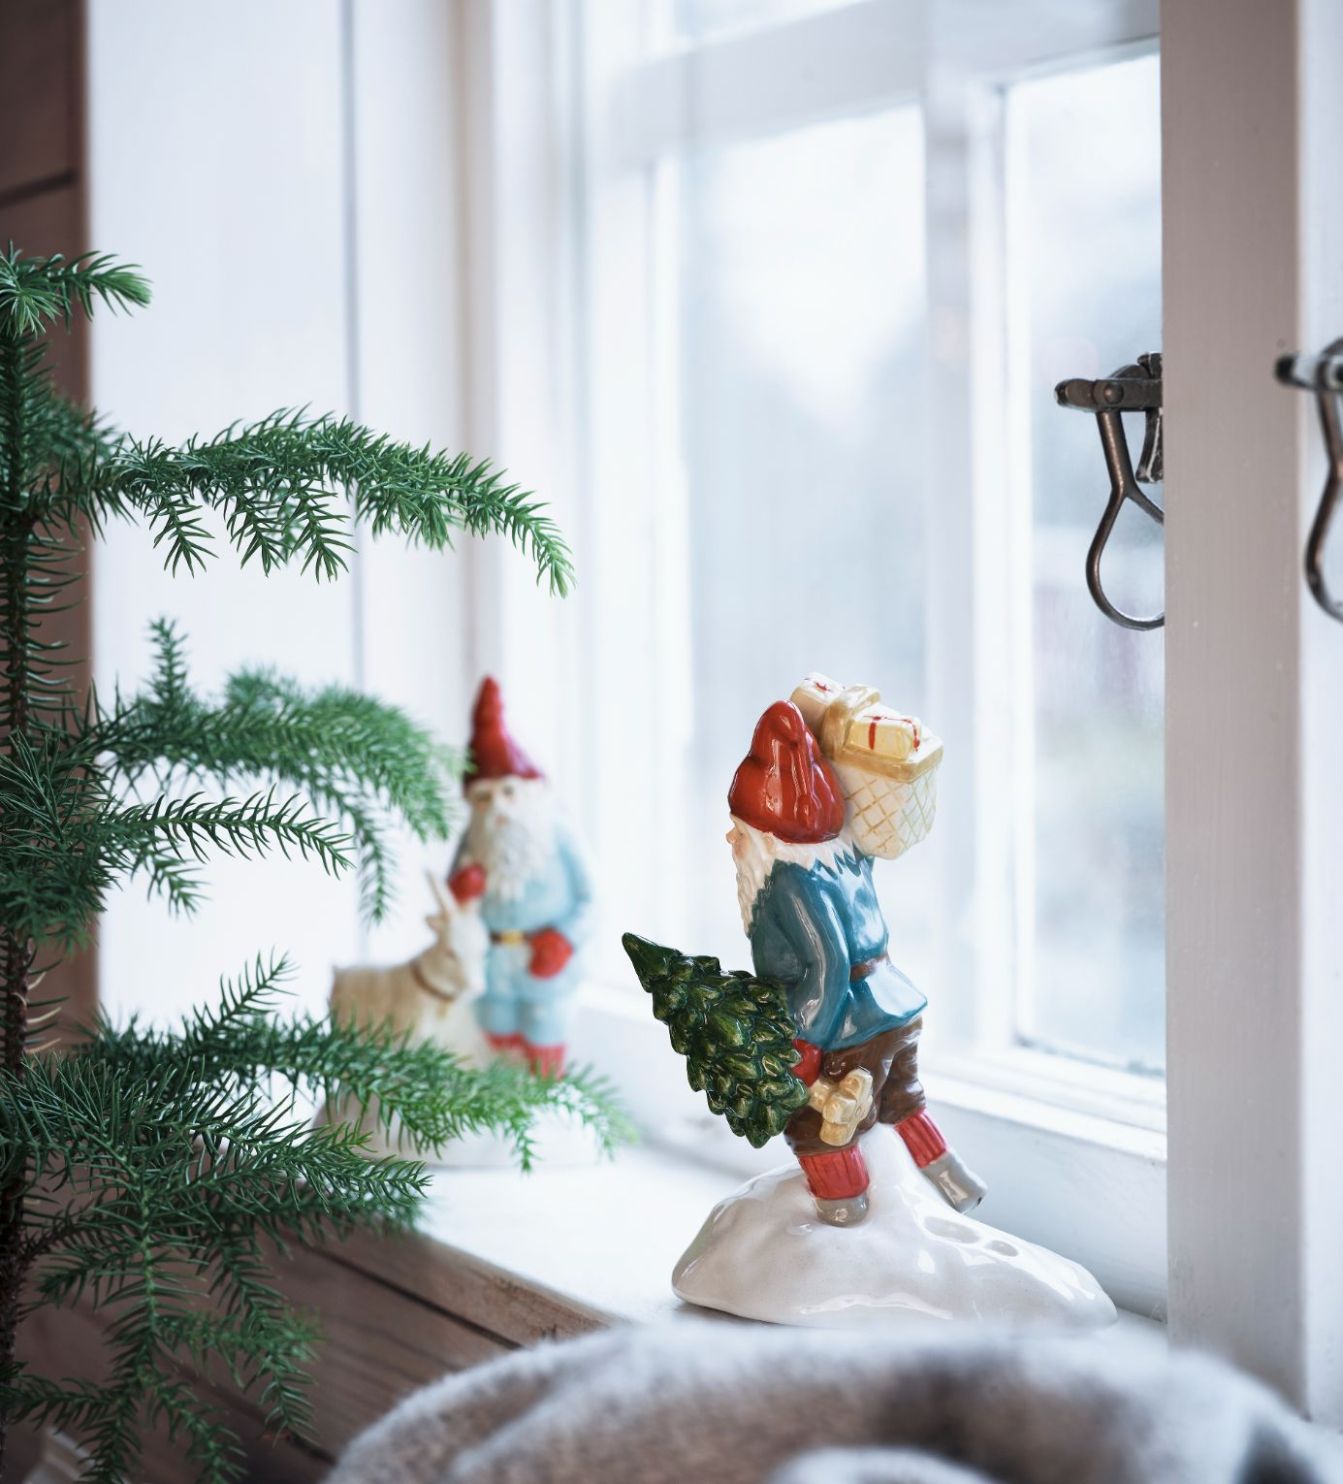 Jennys julbock som har fått sin inspiration från Jenny Nyströms julkort från Cult design, en porslinsfigur i vitt, grått och rött.